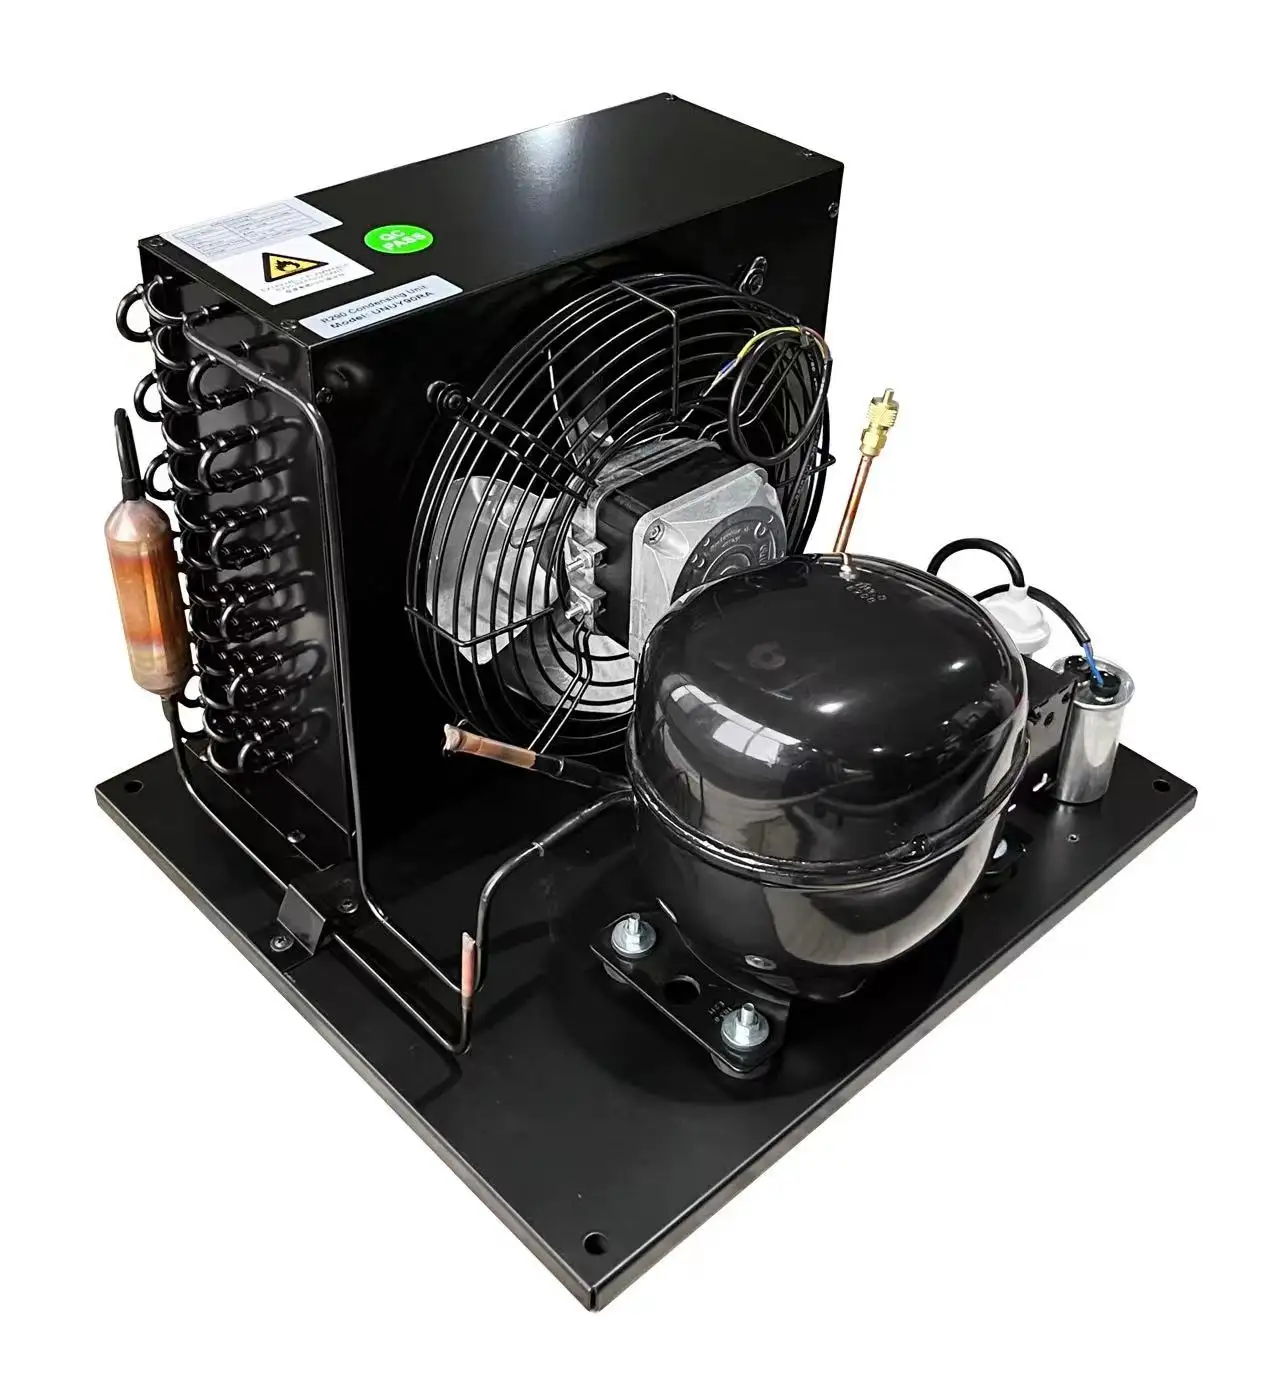 12VDC Mini compressore unità di condensazione Micro canale condensatore per uso domestico congelatore prezzo competitivo